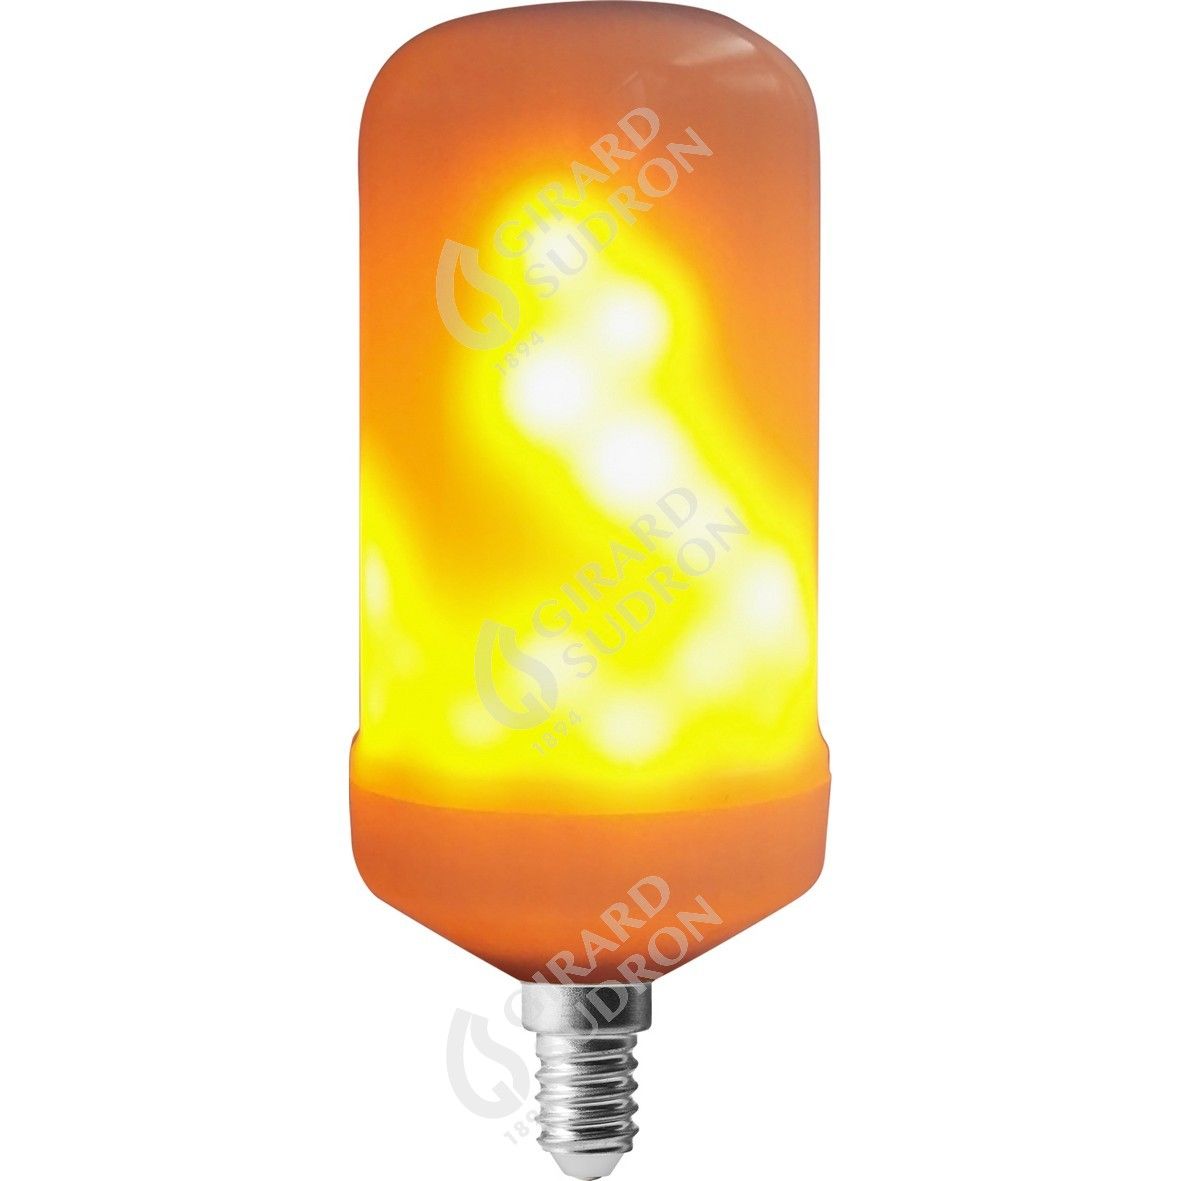 Lampe LED avec effet de flamme 4 positions - Lampe flamme feu